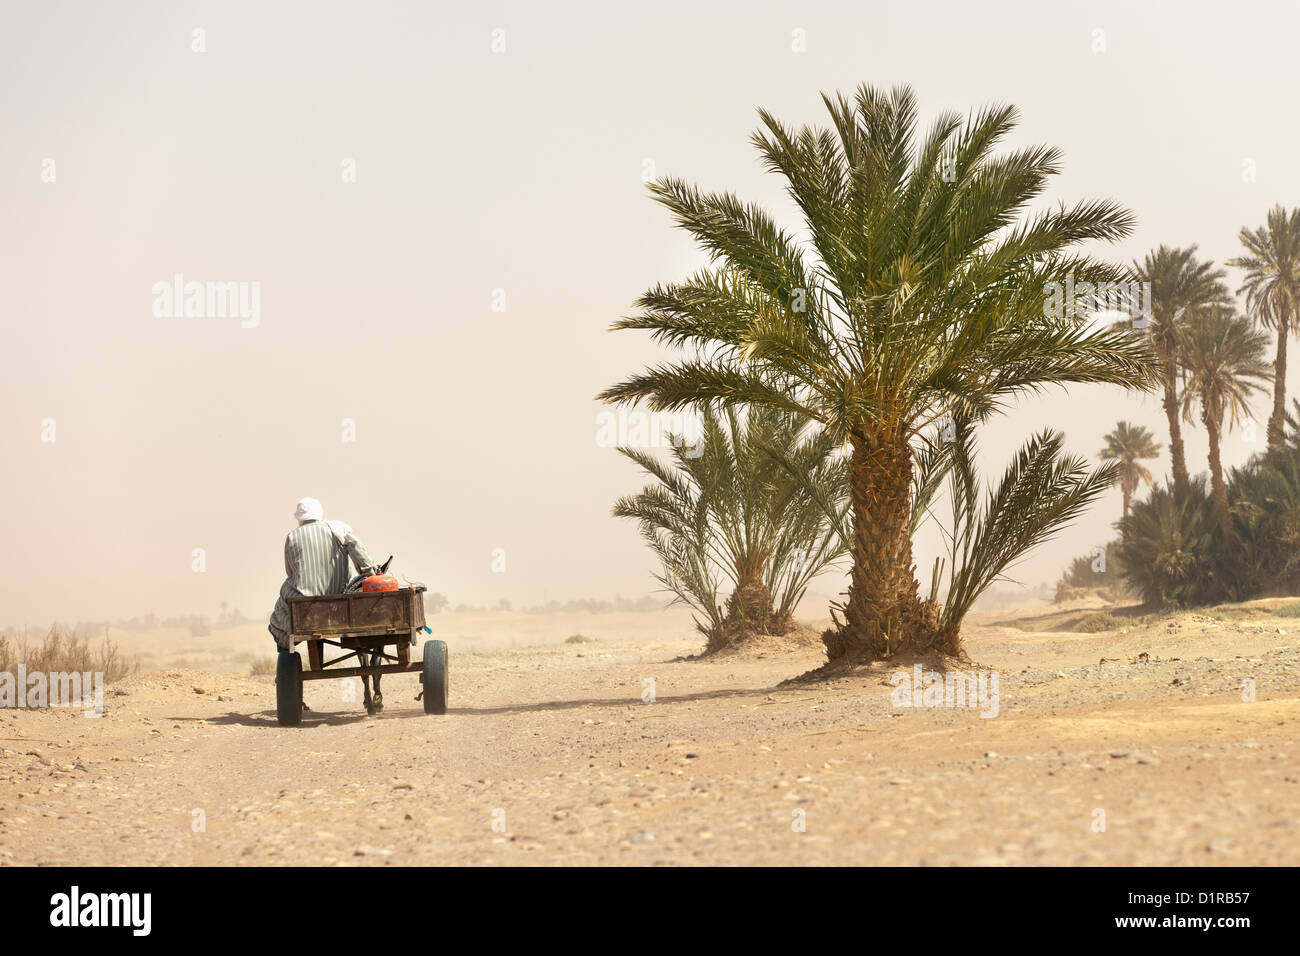 Marruecos, M'Hamid, el hombre y la carreta de burro en el sandstorm. Las palmeras. Foto de stock